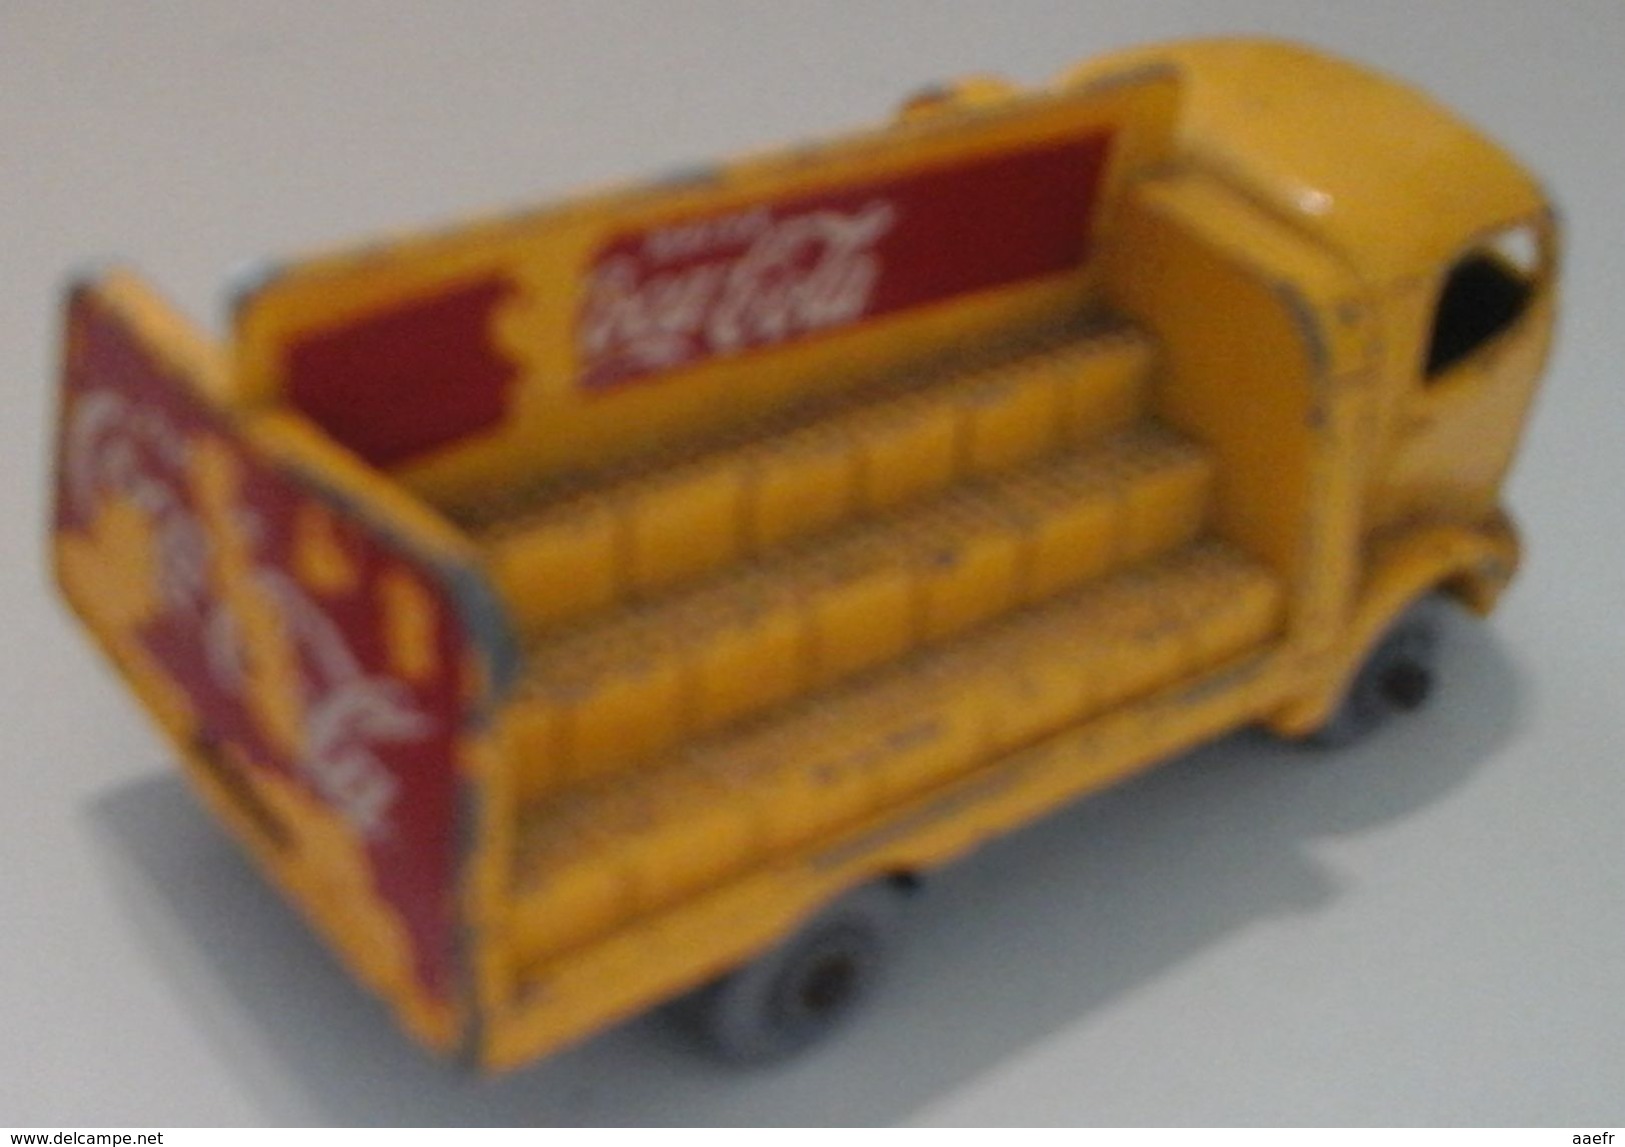 MATCHBOX LESNEY Karrier Bantam 2 Ton N° 37 - 1957 - Camion Coca-cola - Jouets